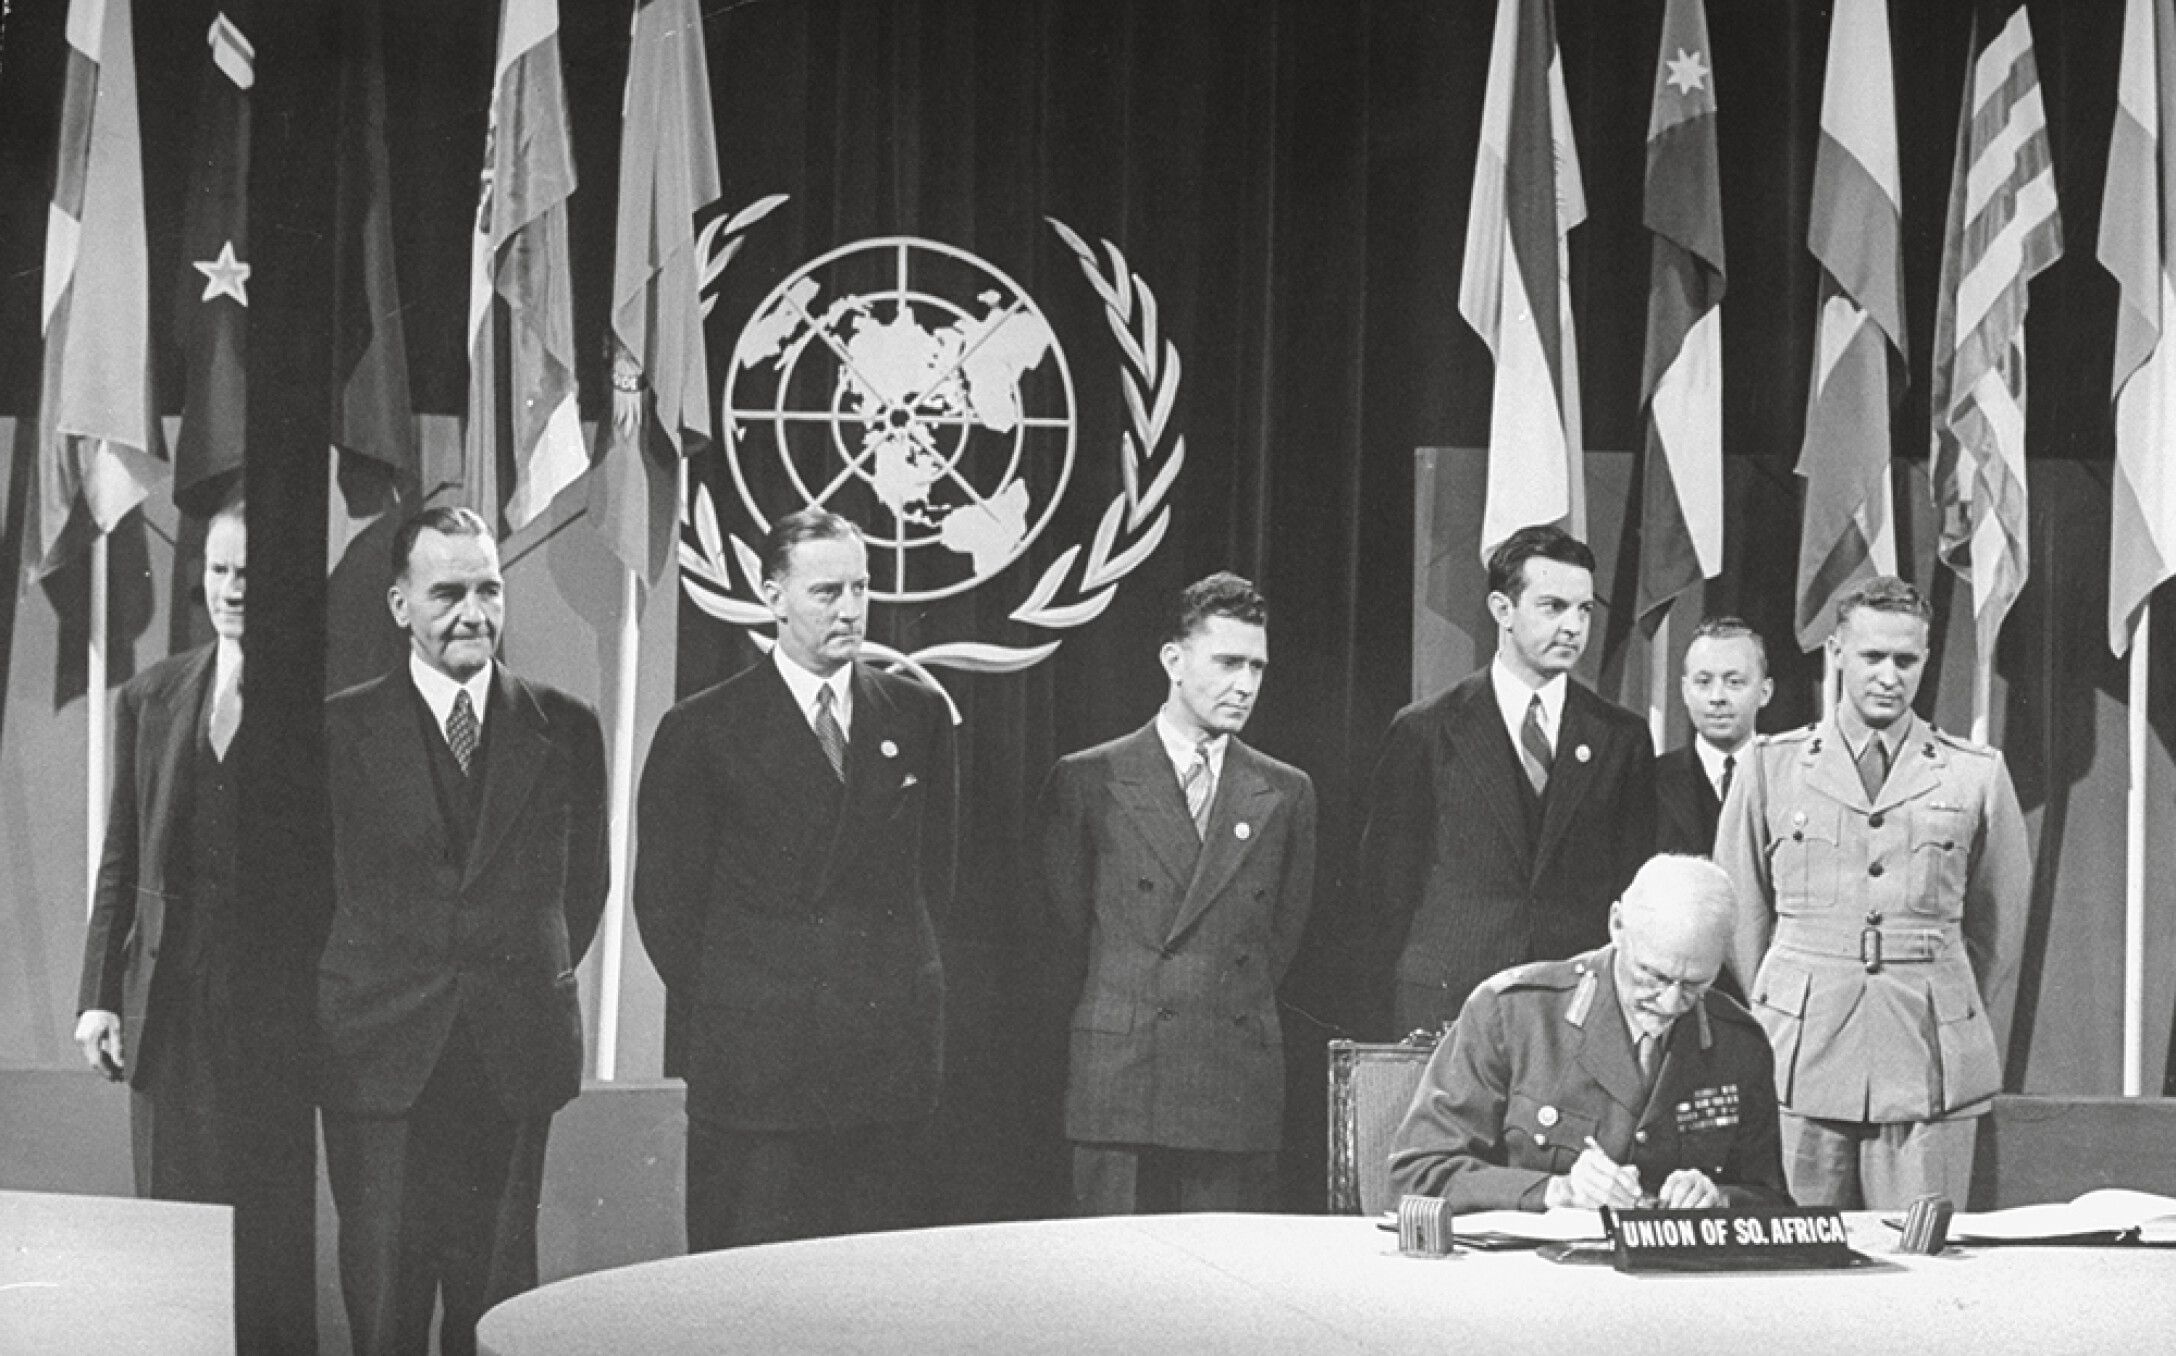 Предшественница оон. Сан-Францисская конференция устав ООН. Устав ООН 1945. ООН 1945 год. Устав организации Объединенных наций (Сан-Франциско, 26 июня 1945 г.).